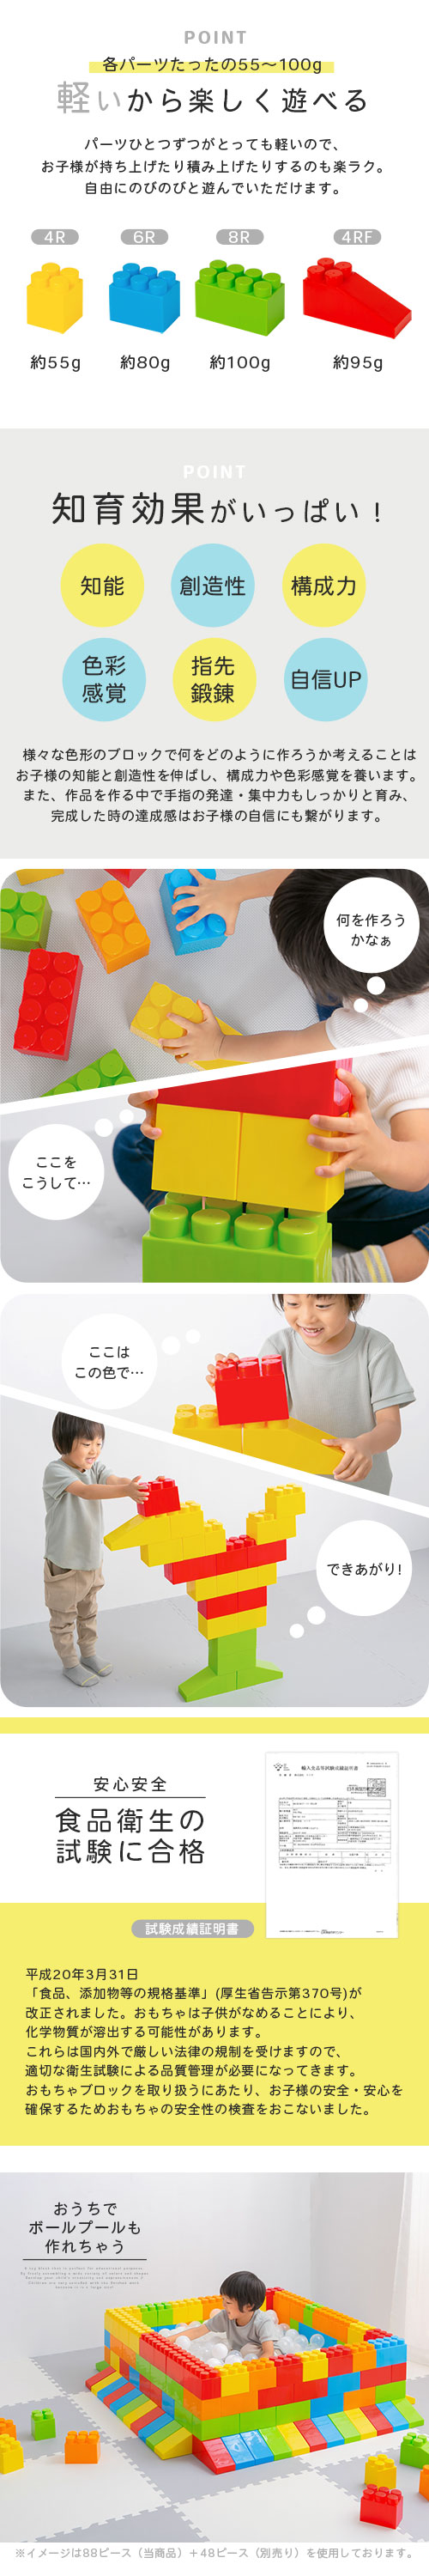 ブロック おもちゃ 88ピース セット 積み木 積木 1歳 2歳 3歳 教材 知育玩具 組み立て 組立 説明書付き 勉強 学習 遊具 大型 子供  パズル 遊具 ビッグ 誕生日 :ETC001395:インテリアのゲキカグ !店 通販 